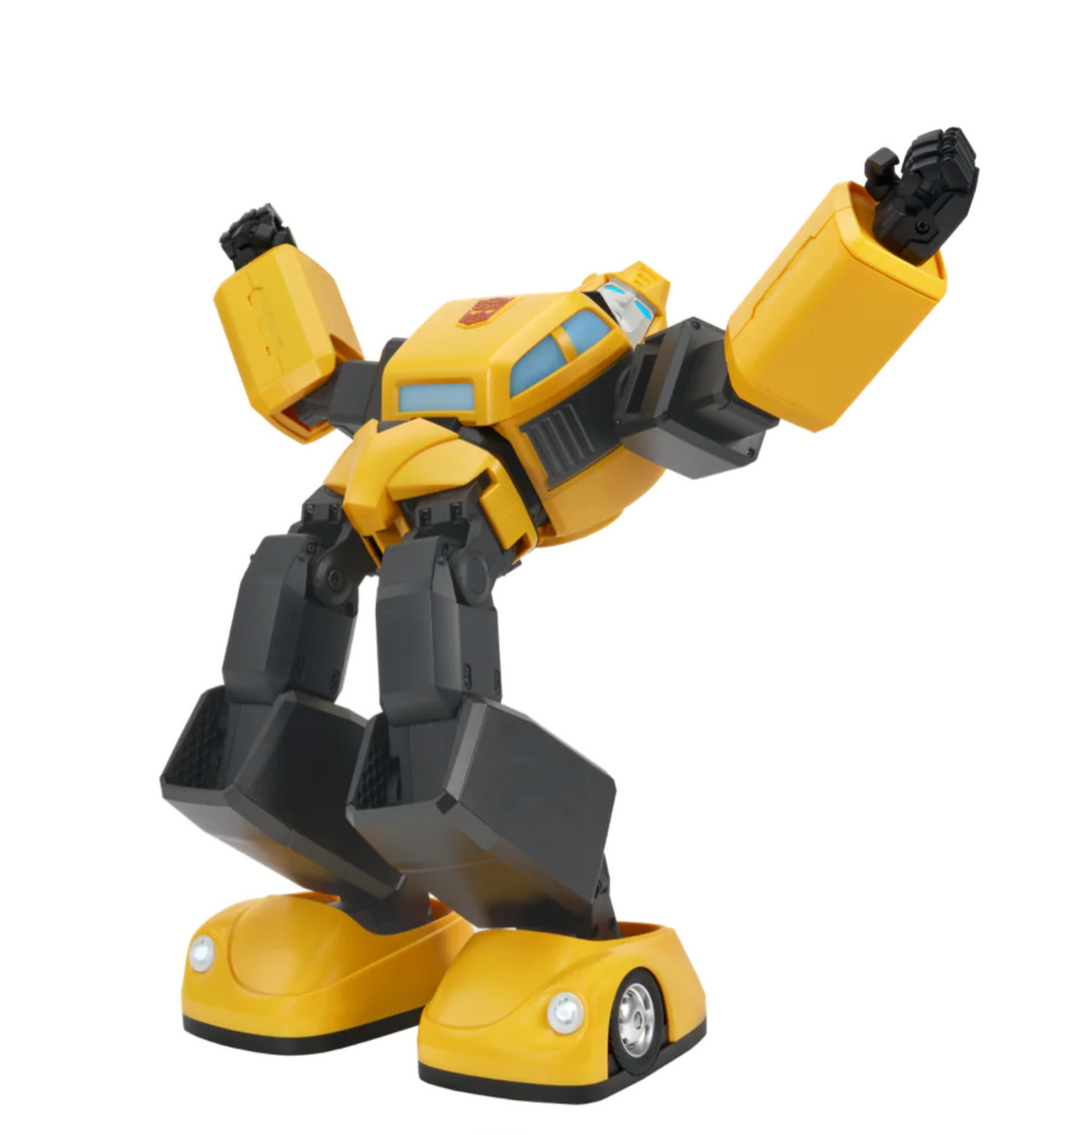 Robosen Transformers Interactive G1 Bumblebee